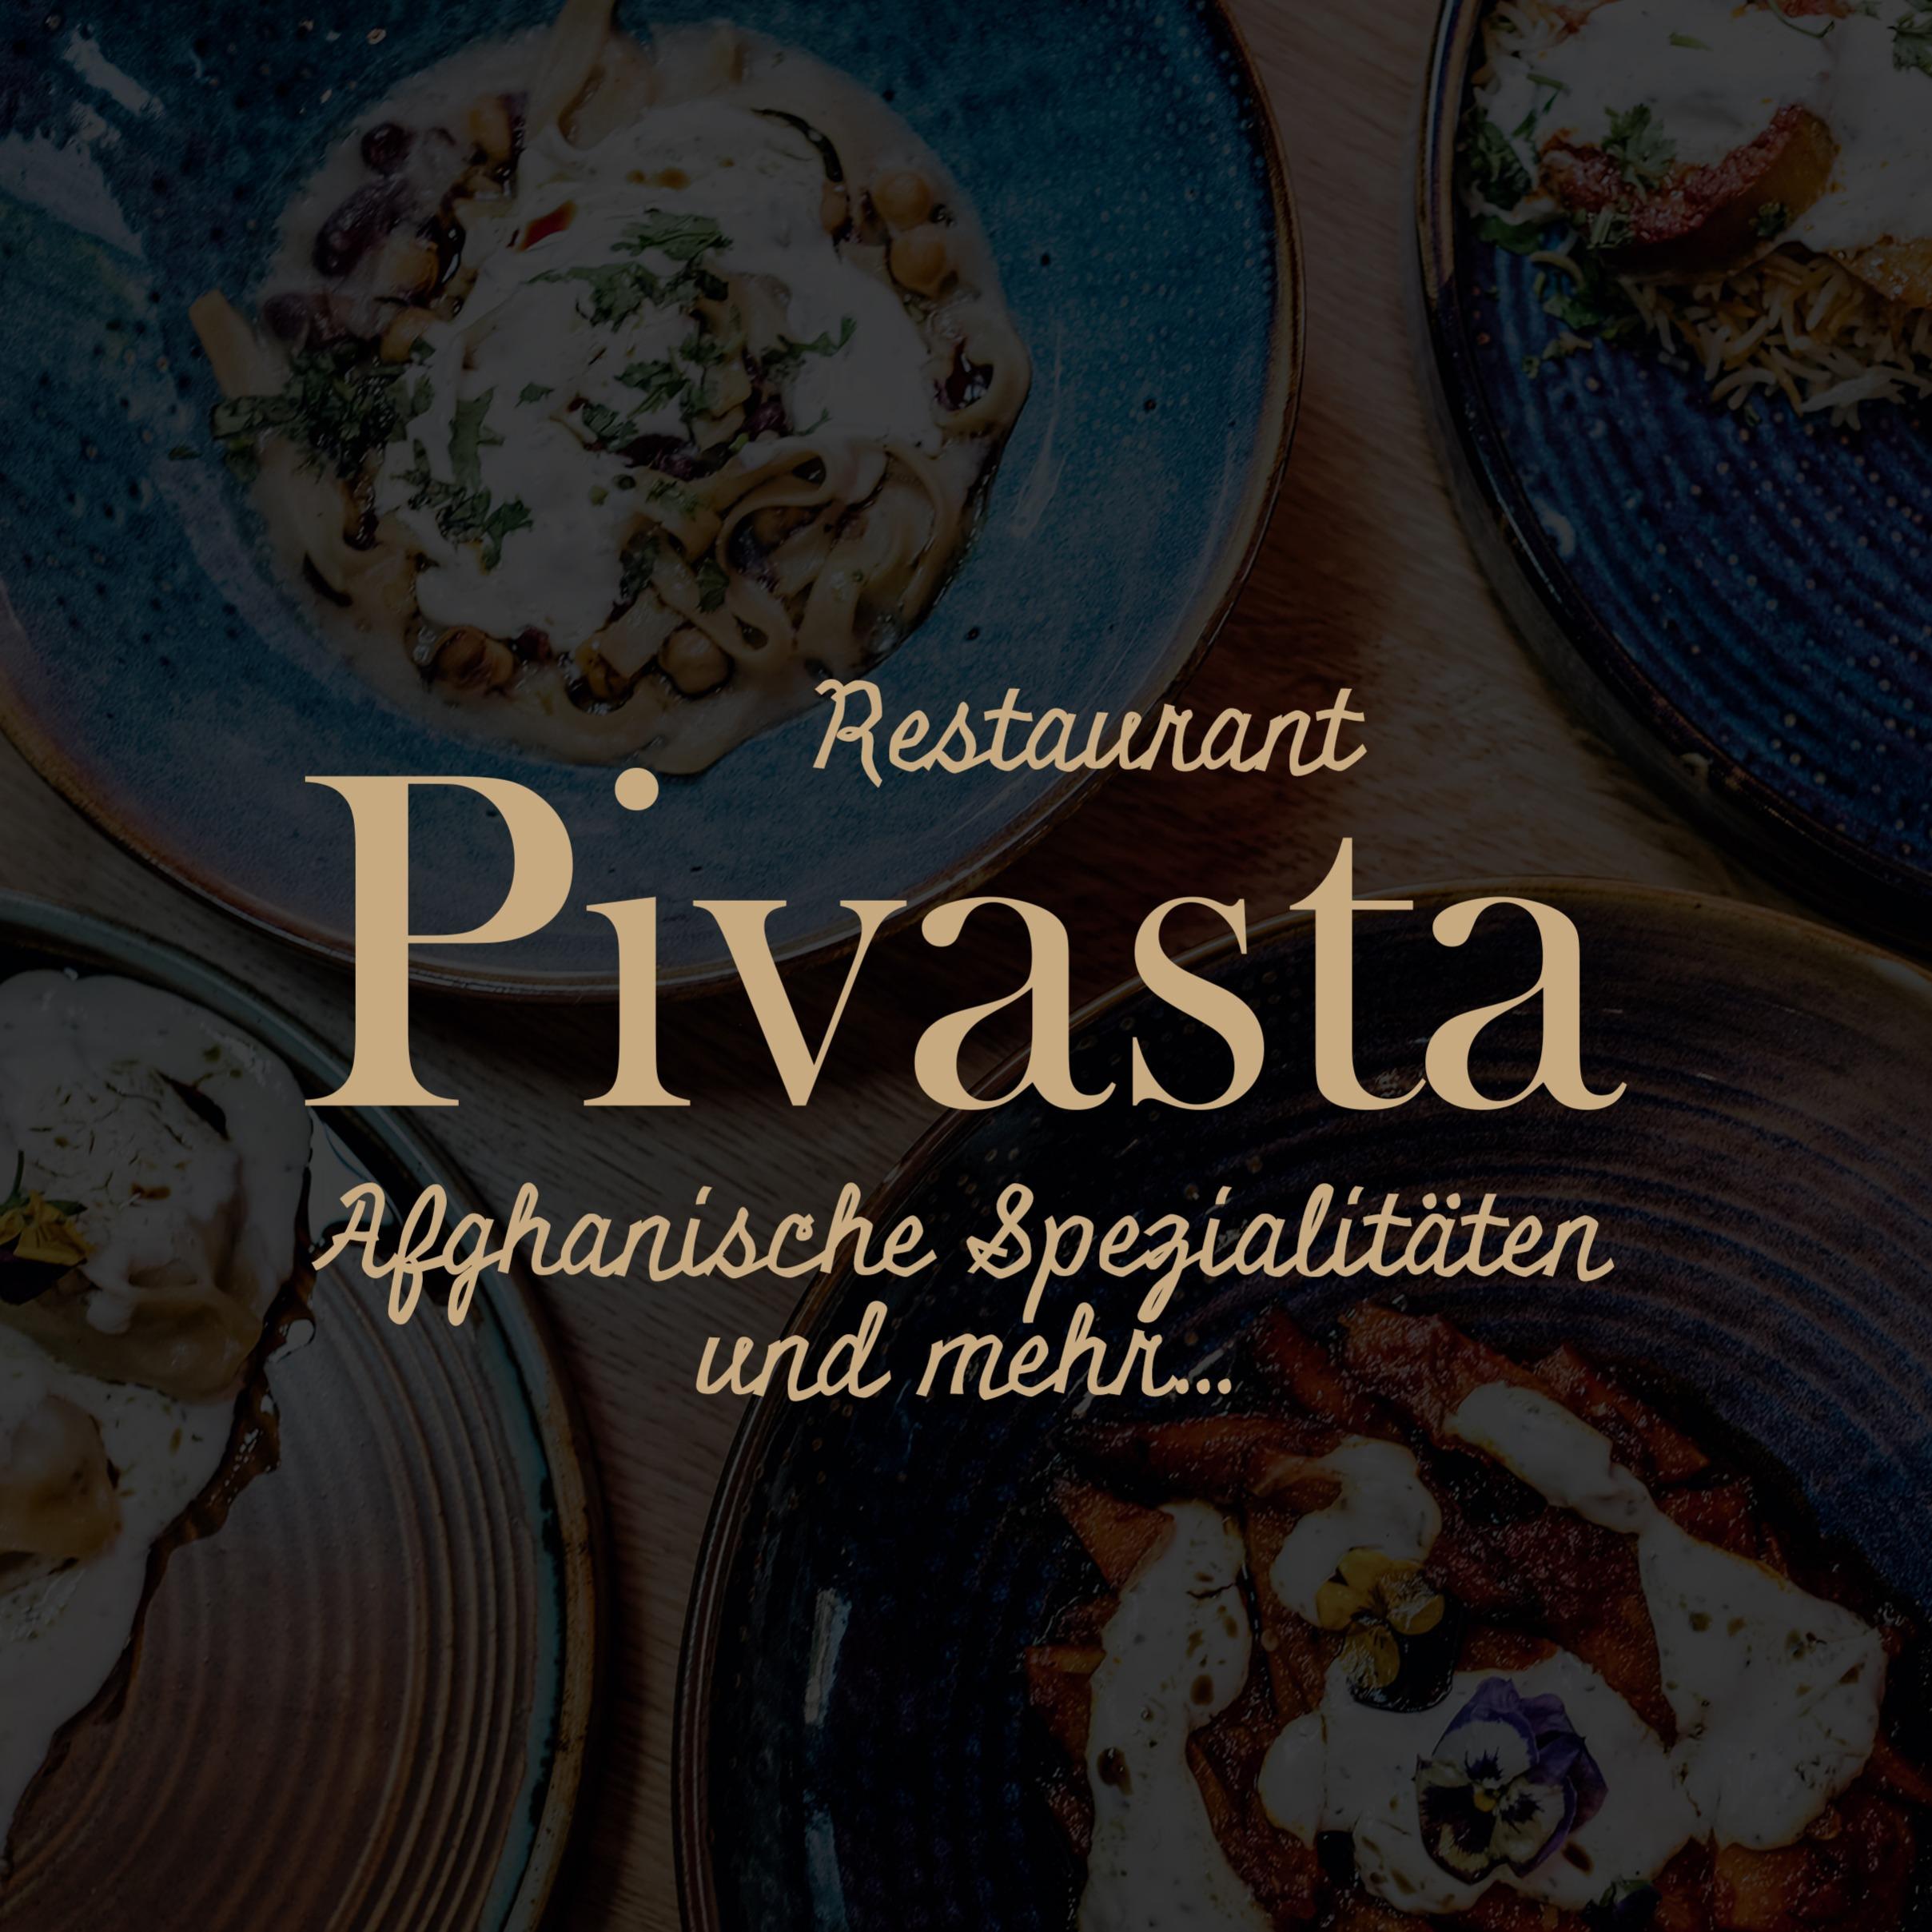 Pivasta Restaurant in München